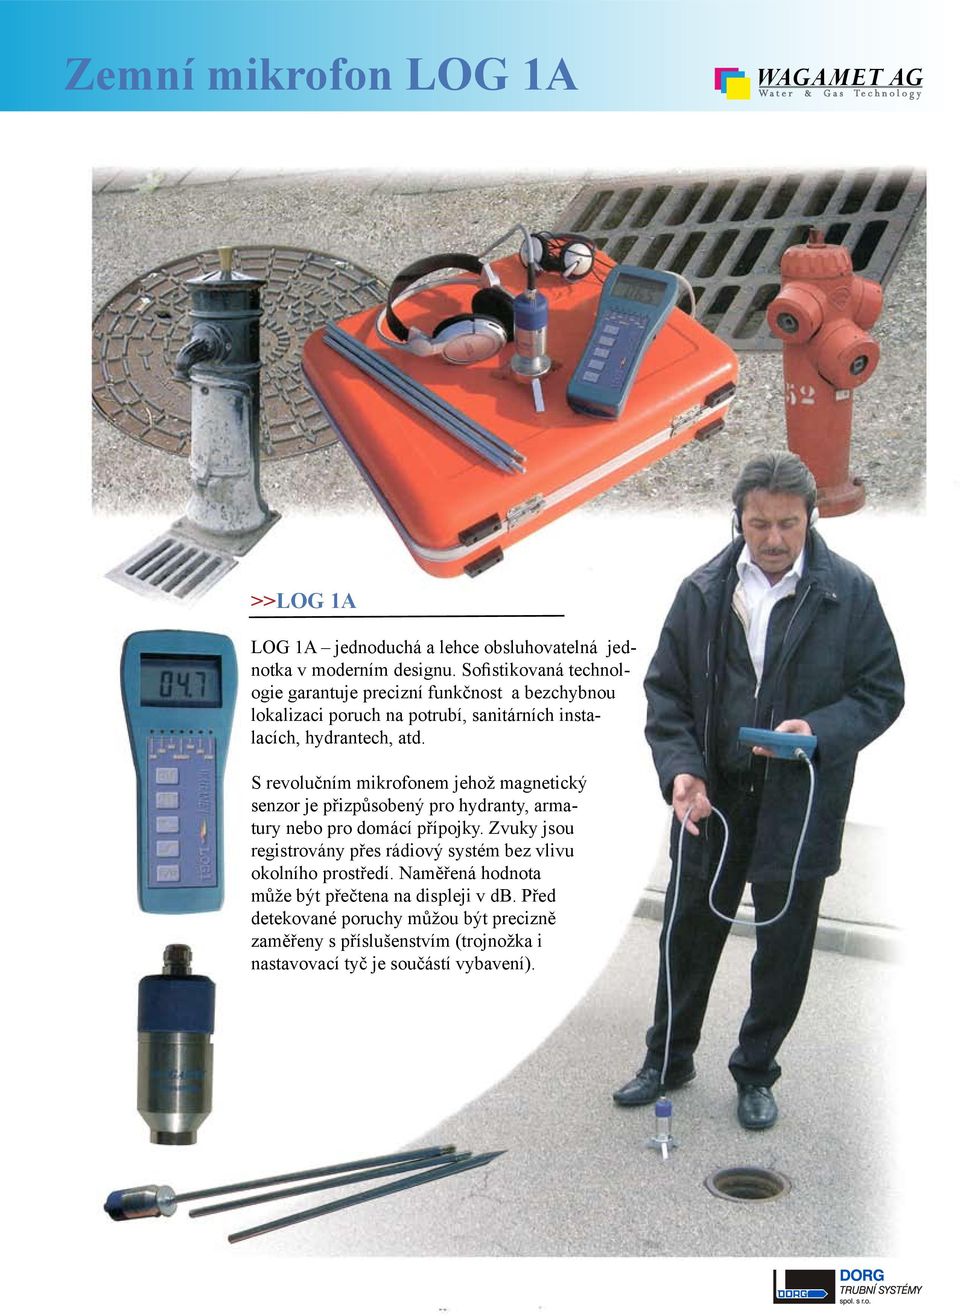 S revolučním mikrofonem jehož magnetický senzor je přizpůsobený pro hydranty, armatury nebo pro domácí přípojky.